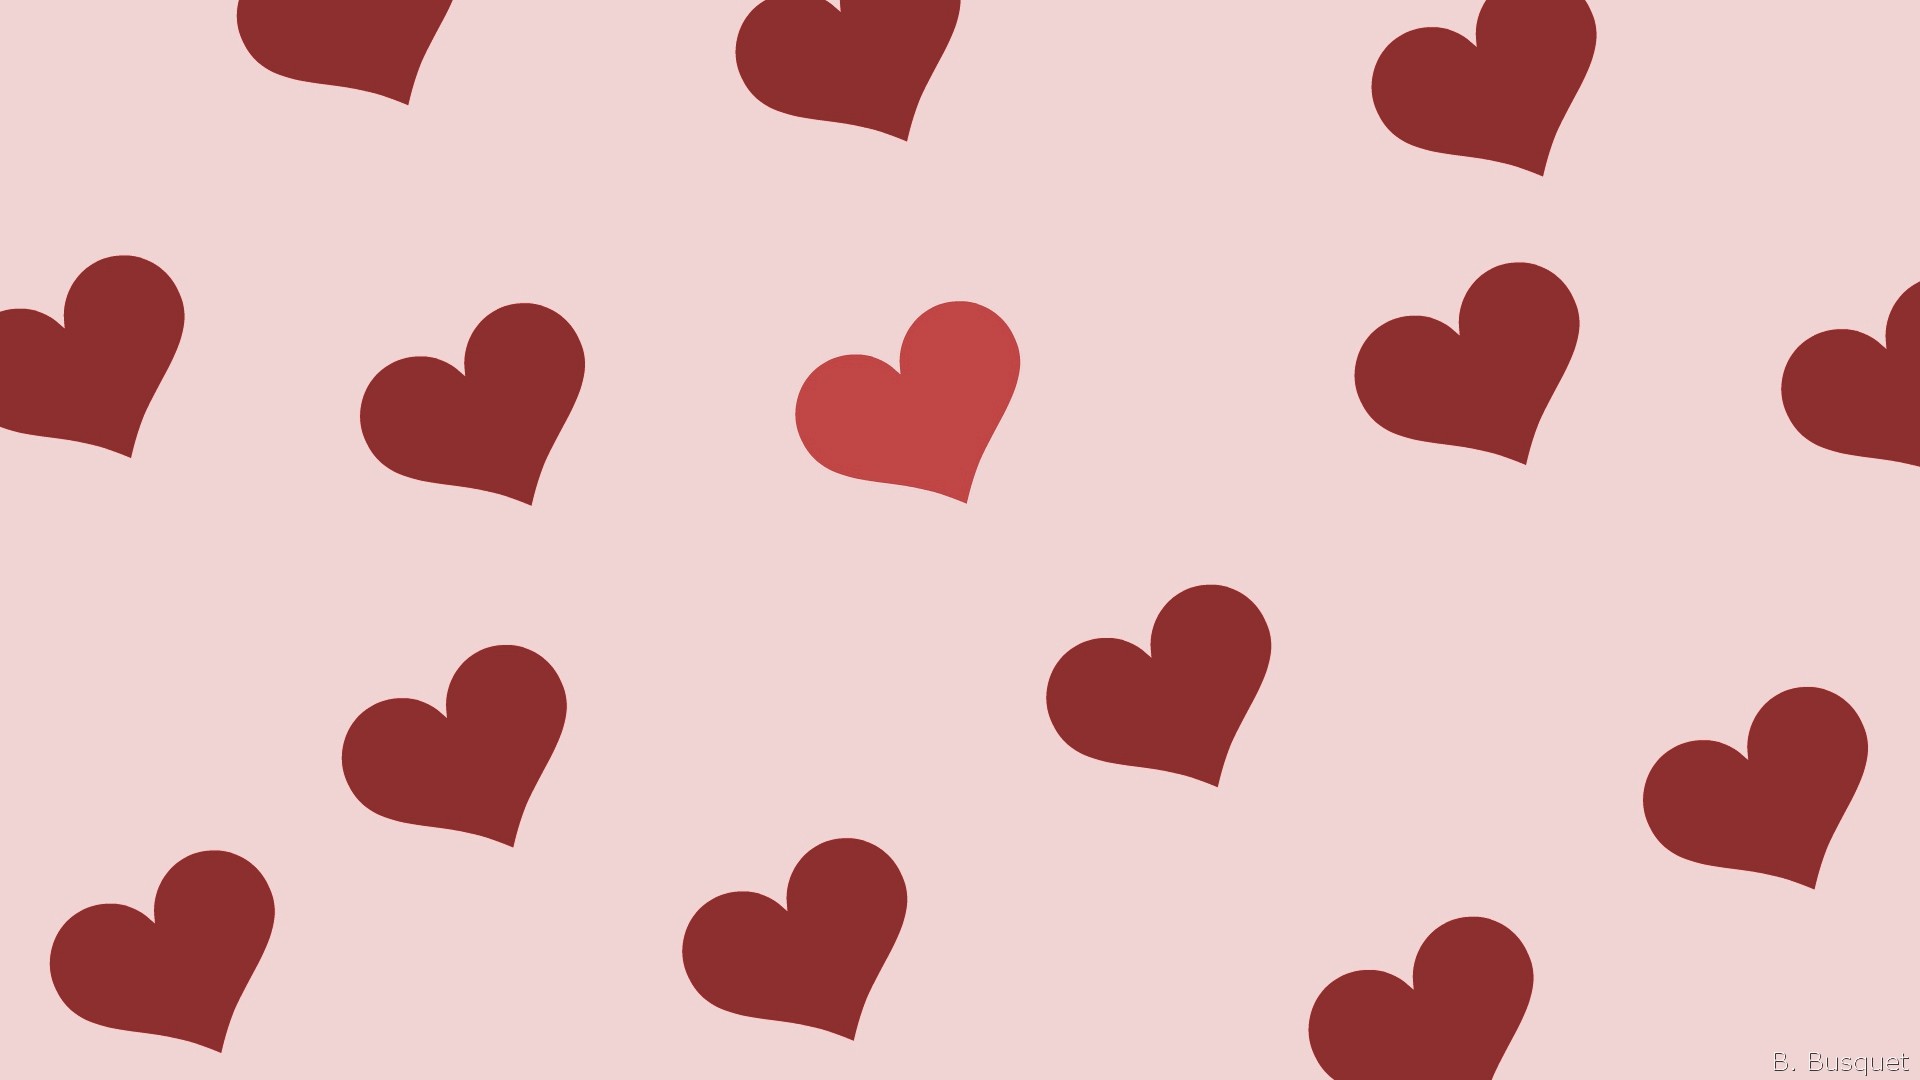 1920x1080 best ideas about Heart wallpaper on Pinterest Heart print